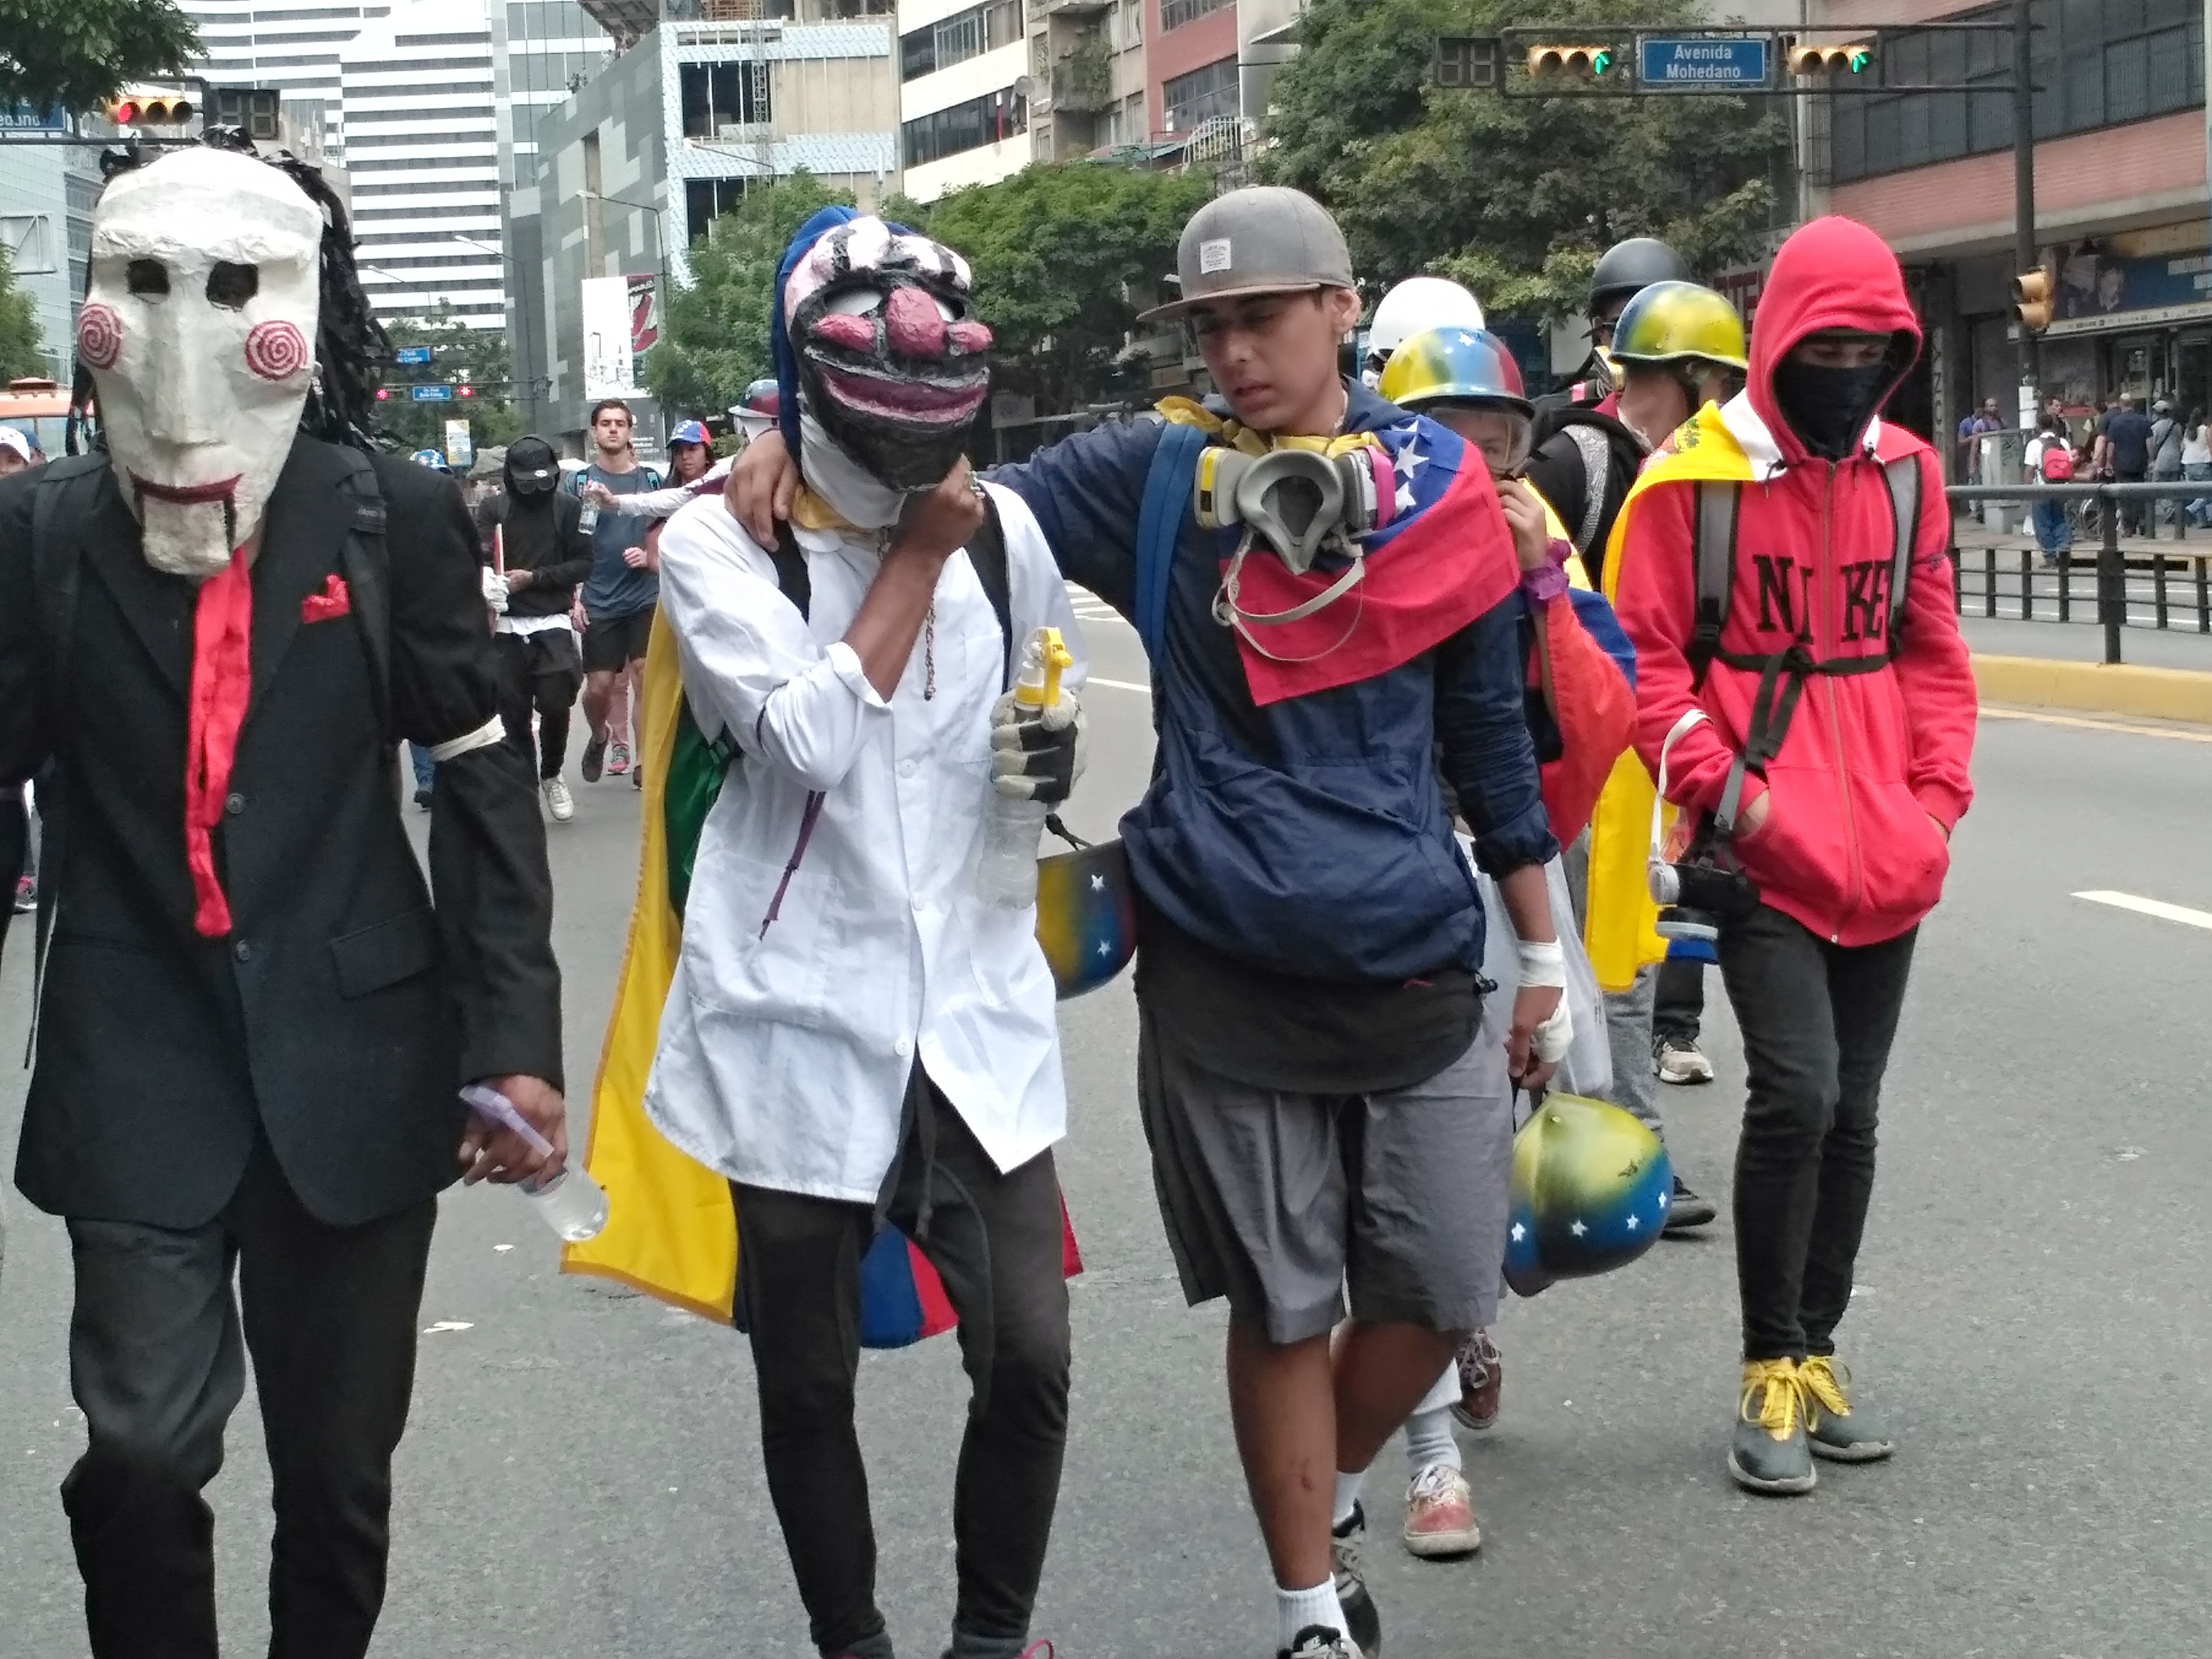 Nos protestos em Caracas, jovens utilizam máscaras antigás e enrolam camisas em seus rostos para se proteger (Foto: Manuel Rueda/Agência Pública)